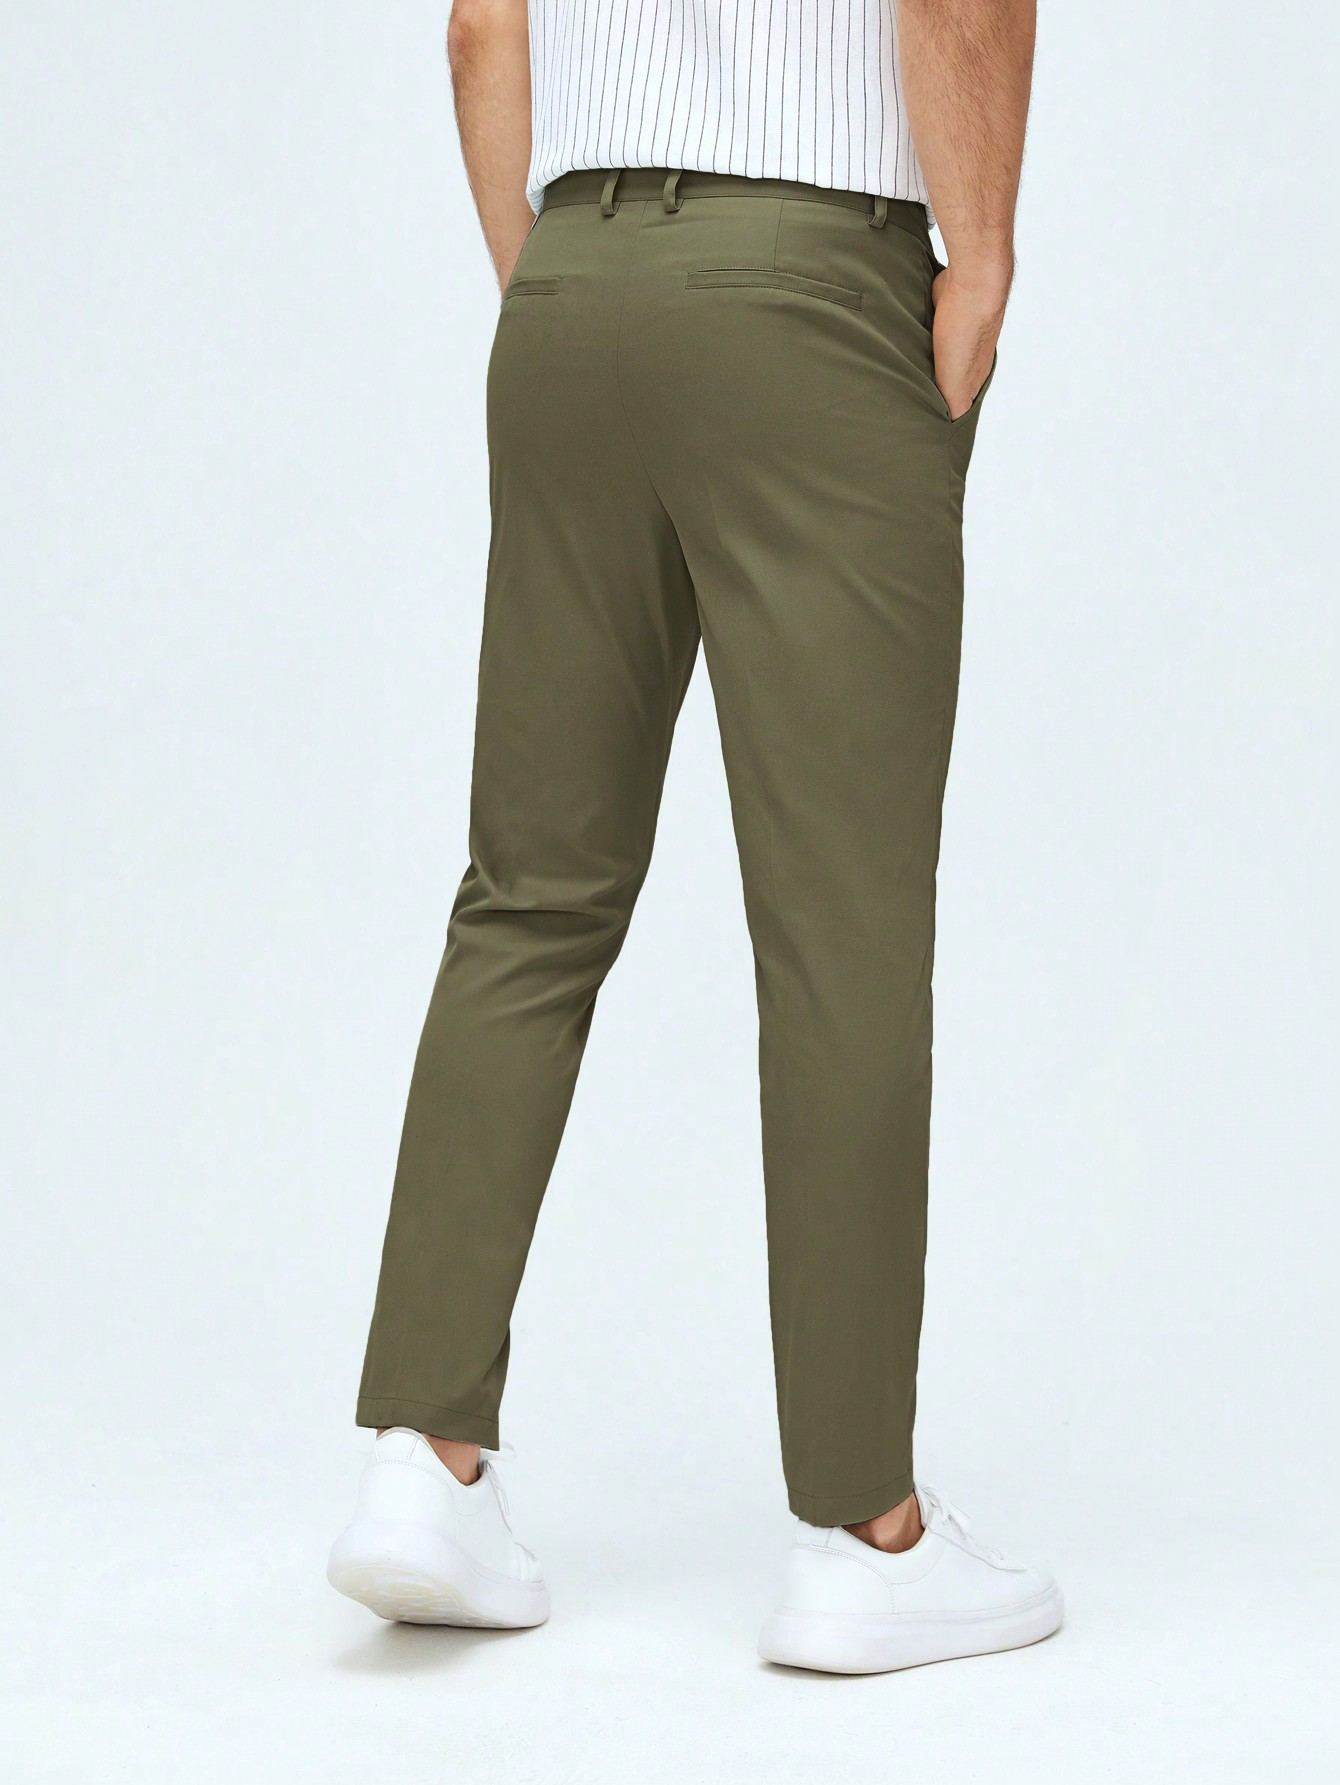 Мужские классические классические брюки из тканого материала с боковыми карманами Manfinity Mode, армейский зеленый брюки классические 46 размер